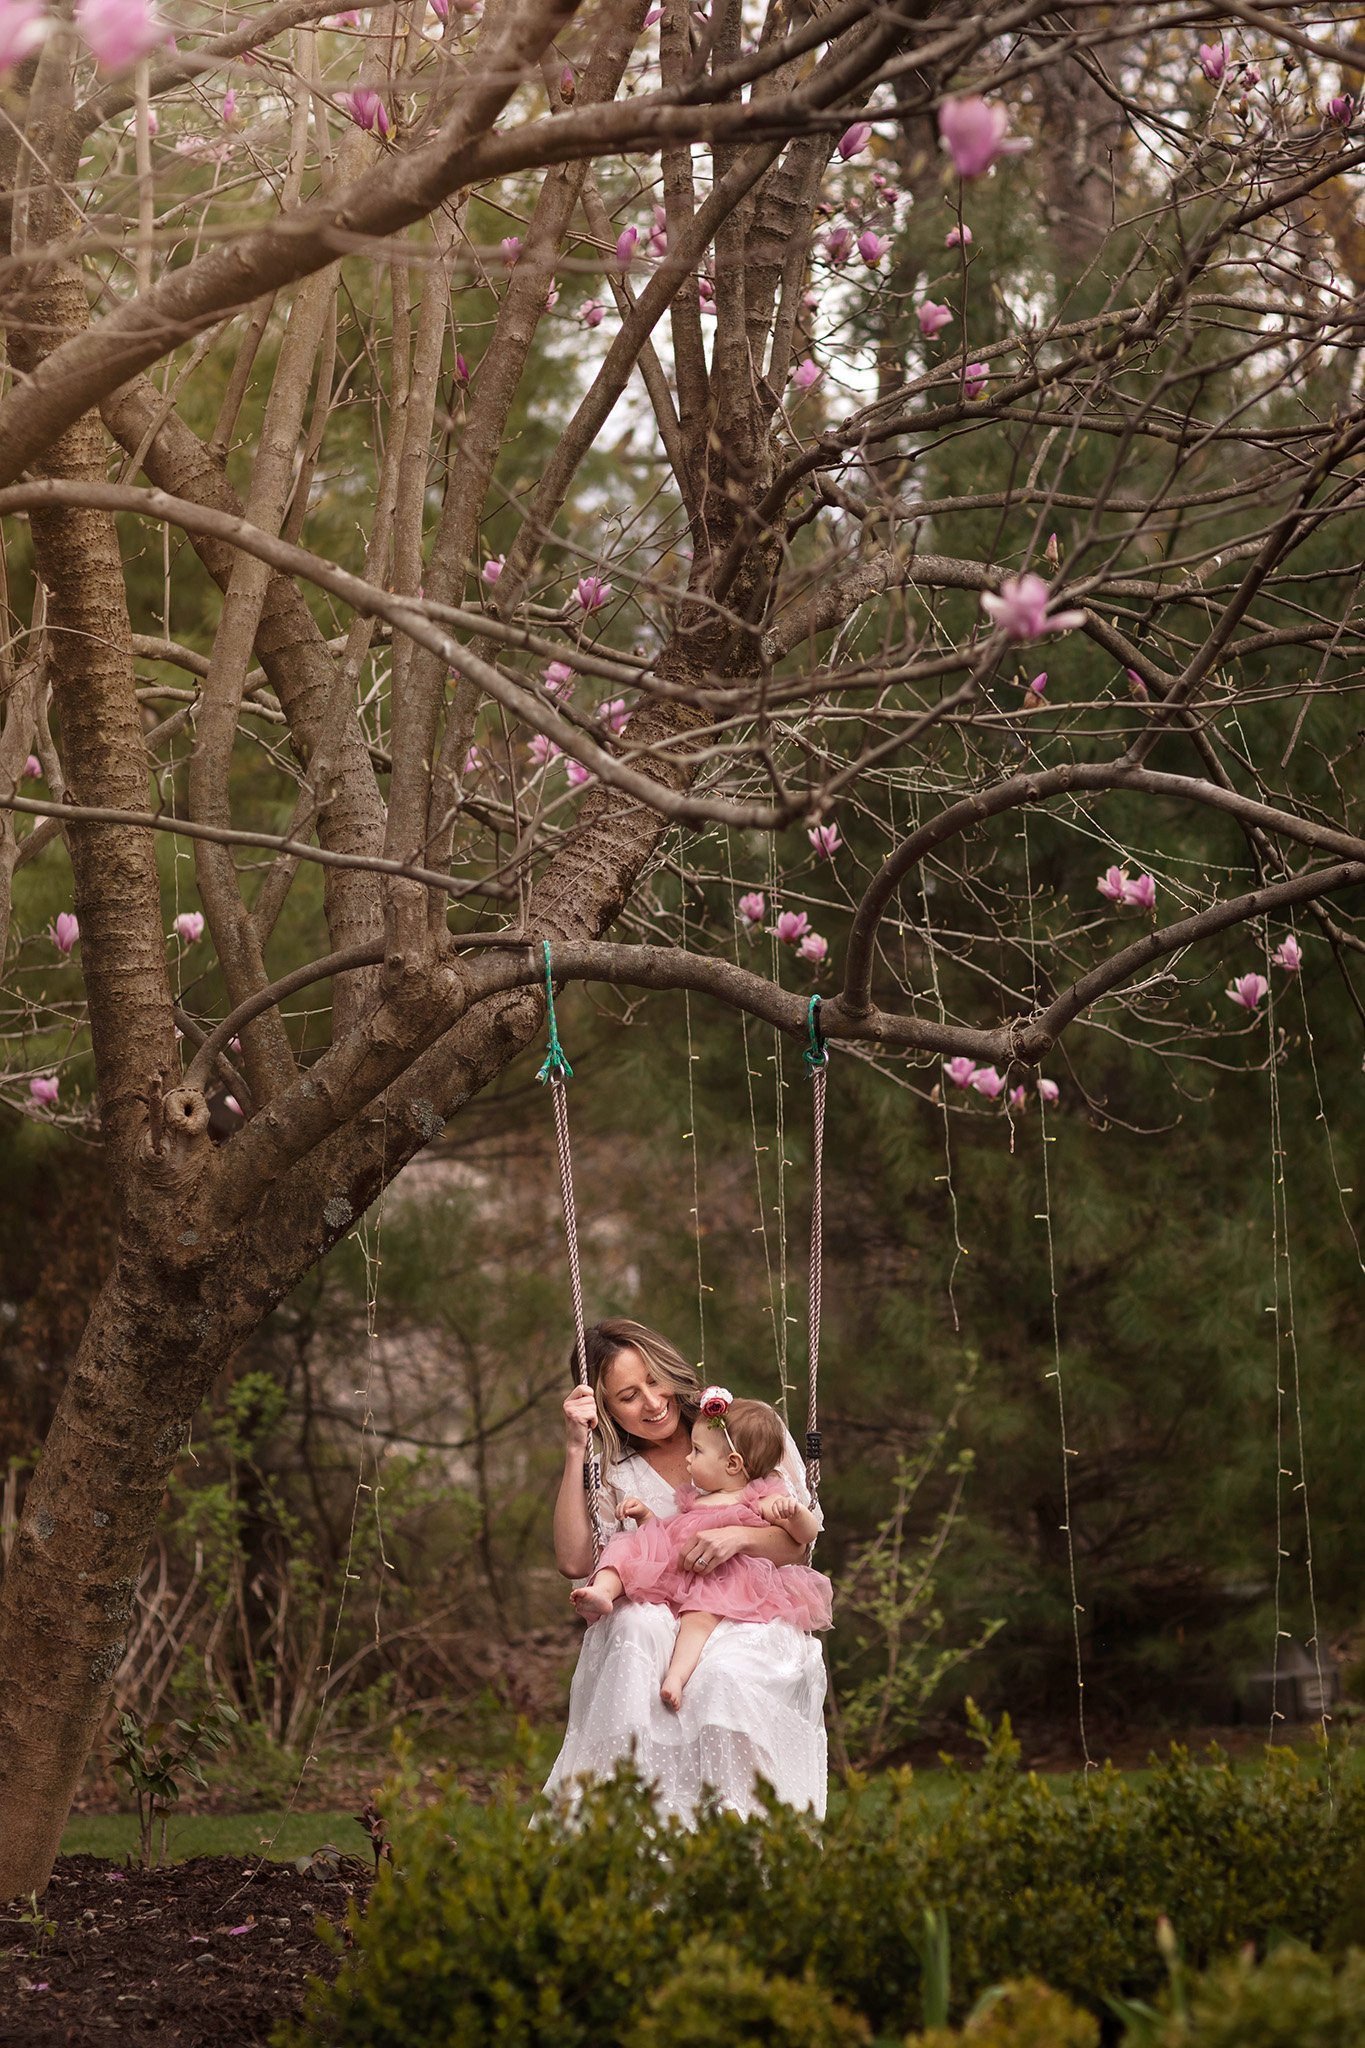 motherhood photography mom and baby on swing